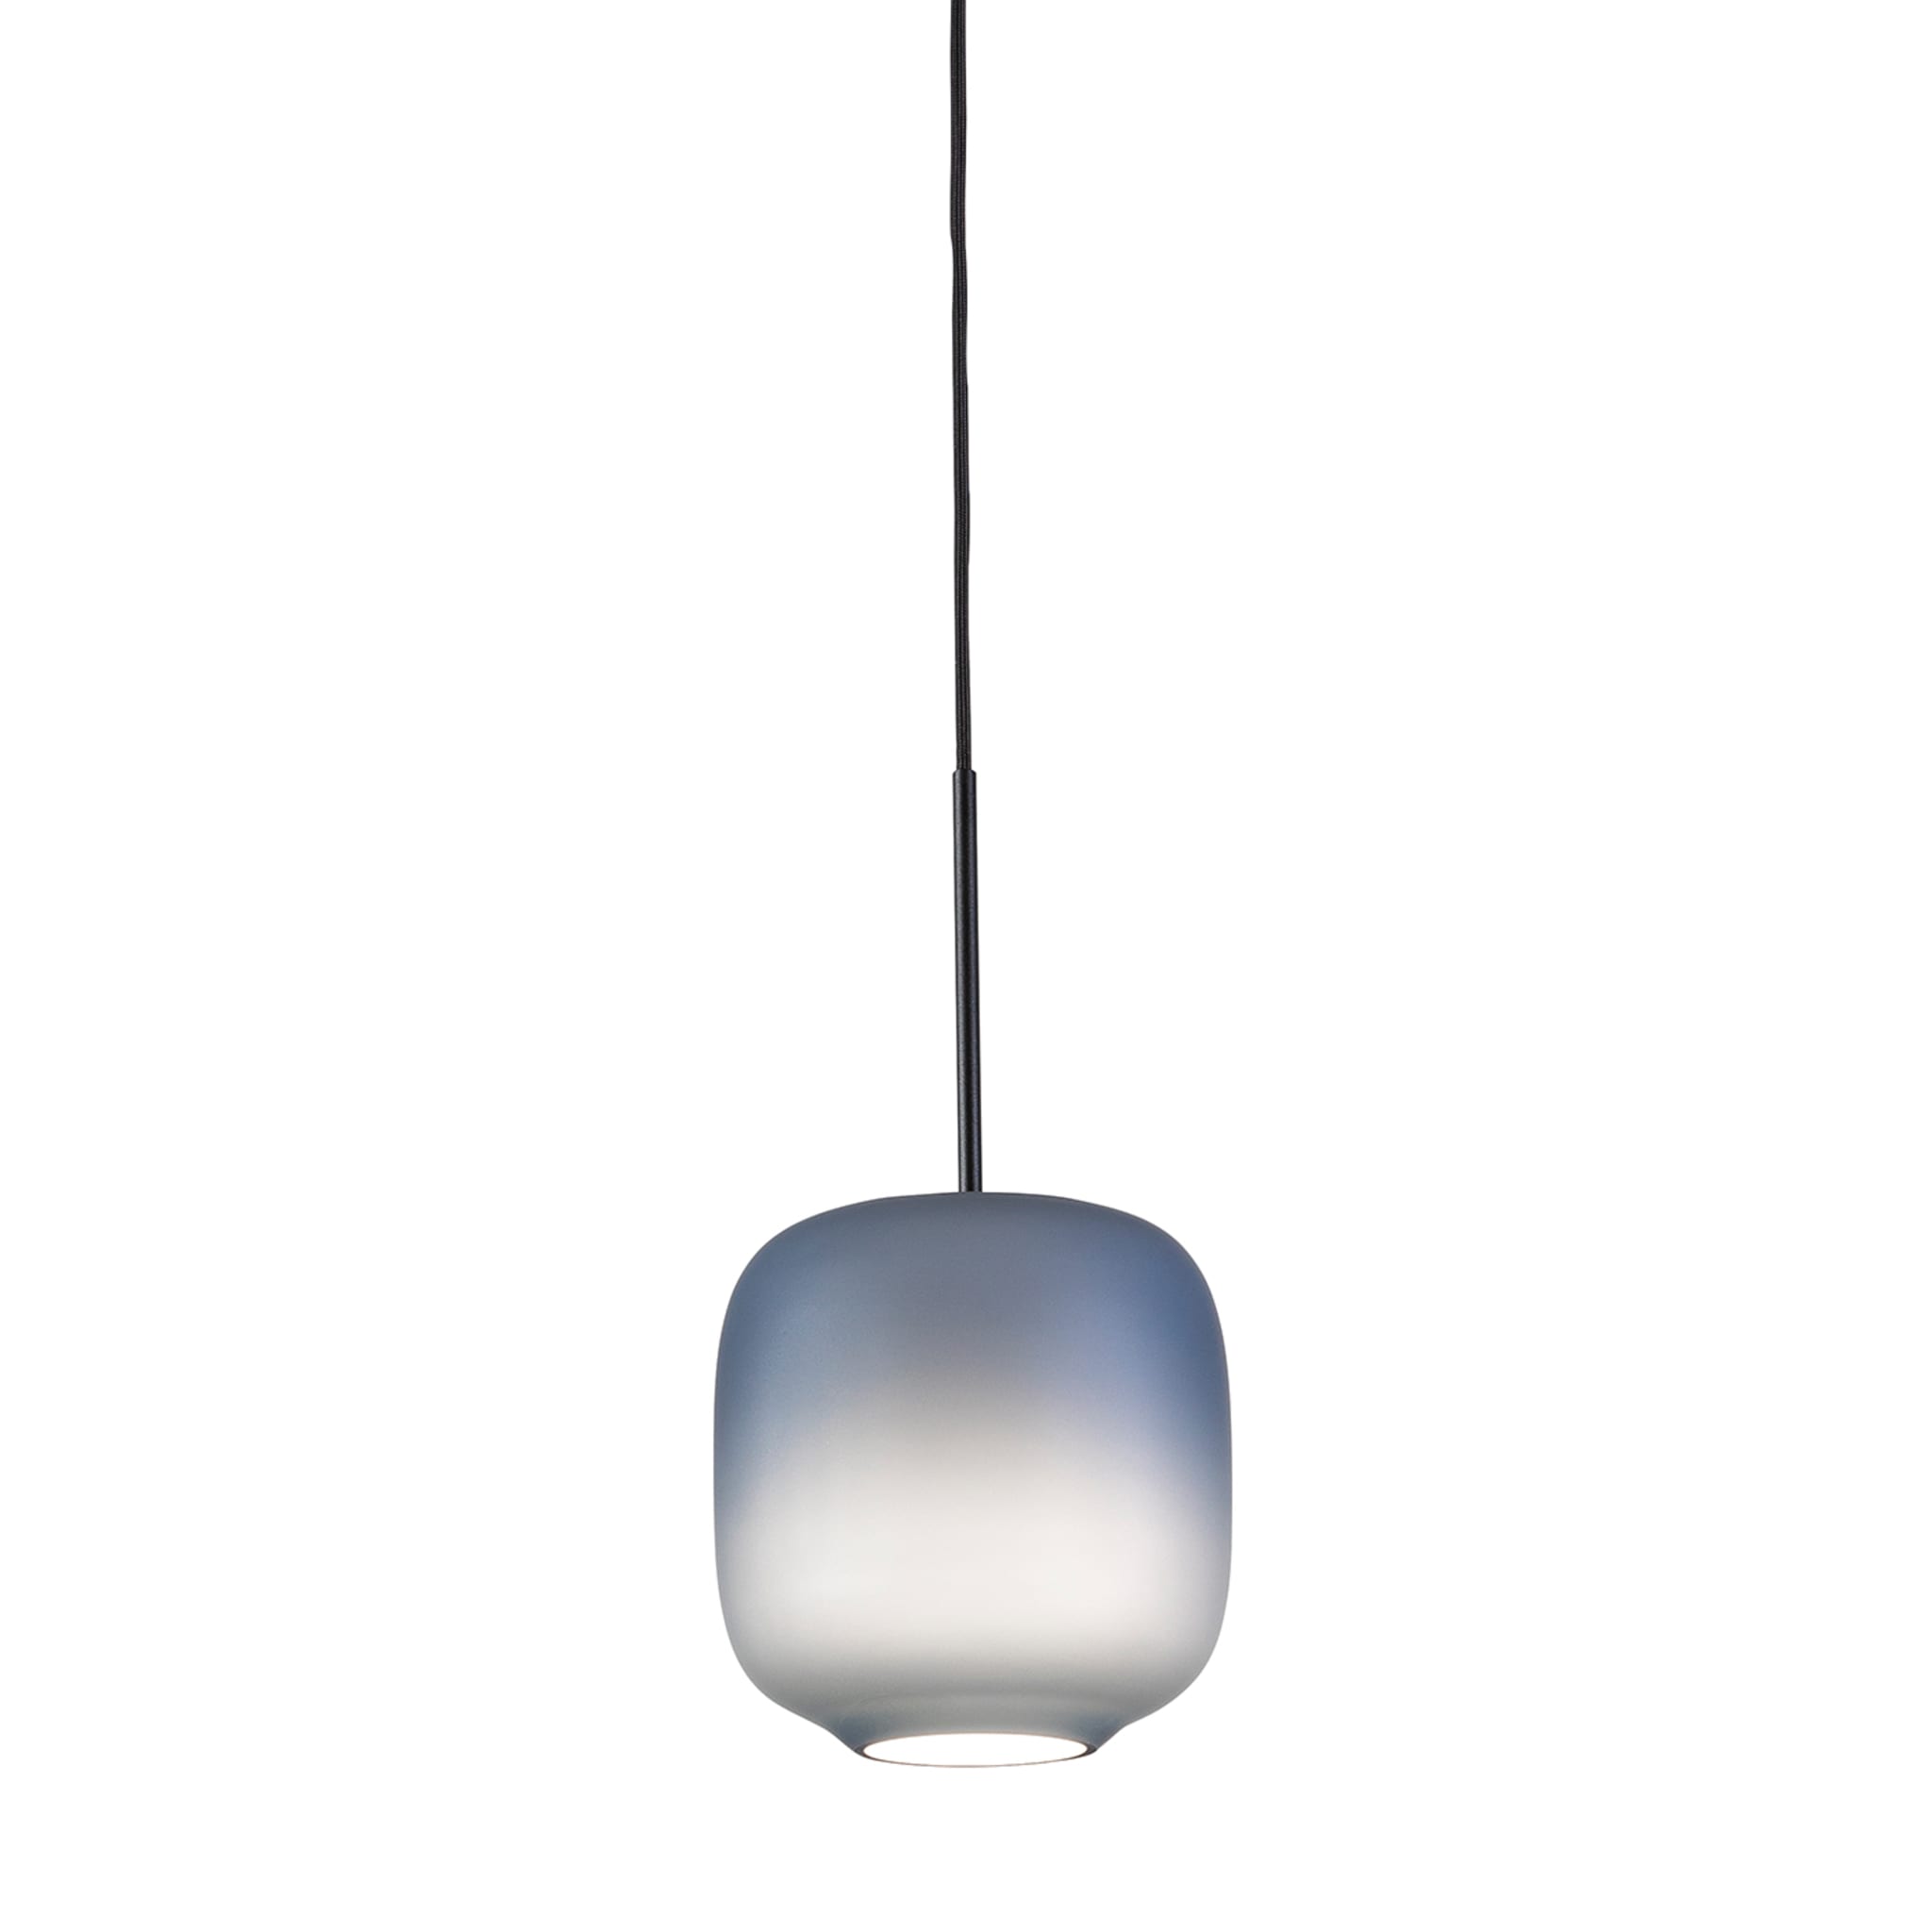 ARYA lampe suspendue bleue #1 par Giulio Cappellini &amp; Antonio Facco - Vue alternative 1